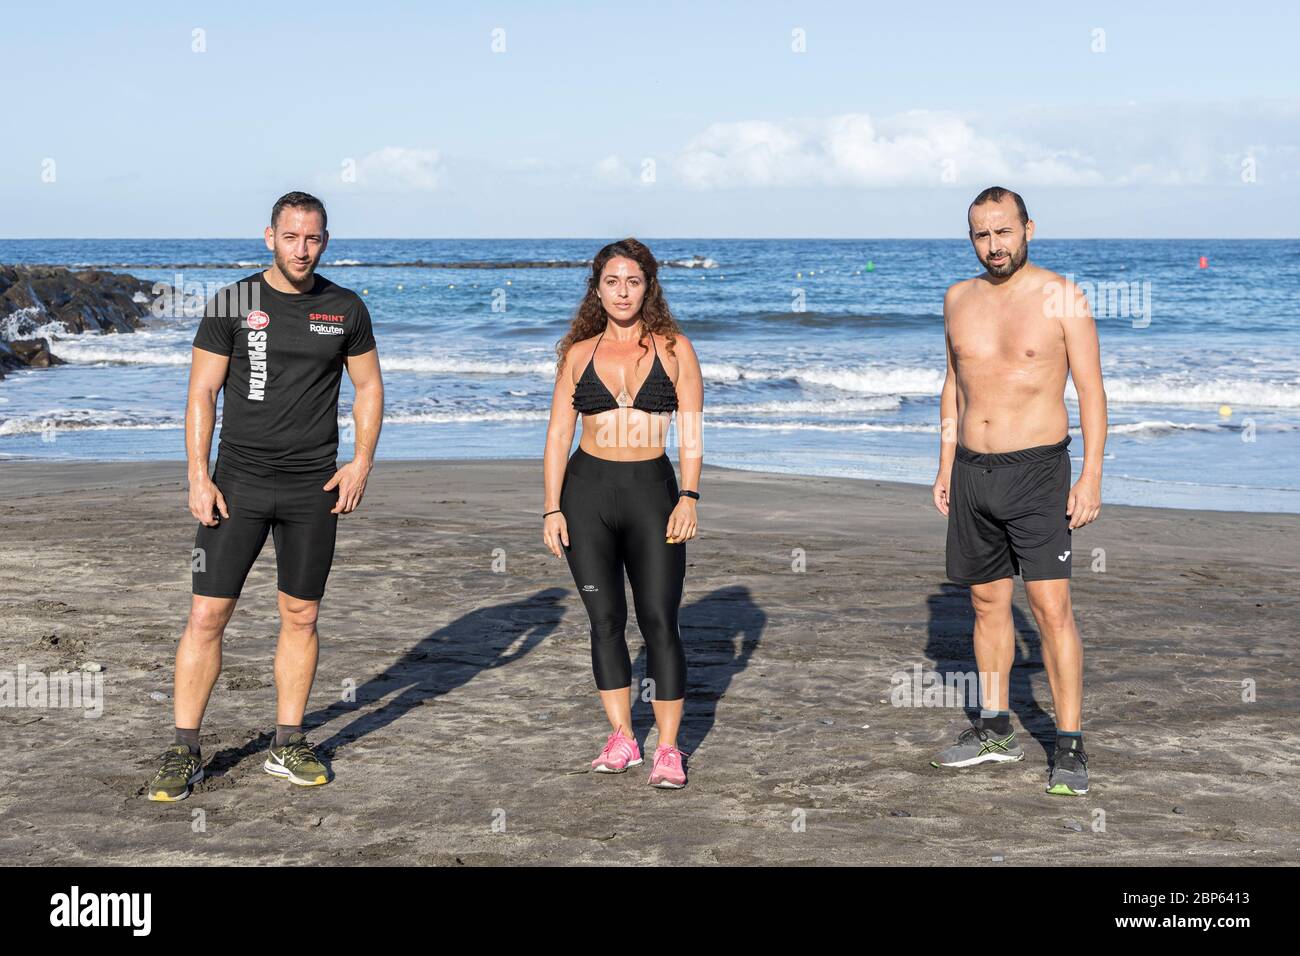 Drei junge Menschen posieren für ein Porträt, während sie während der ersten Phase der Deeskalation des Covid 19 am Strand Playa Fanabe körperliche Distanz wahren, Stockfoto